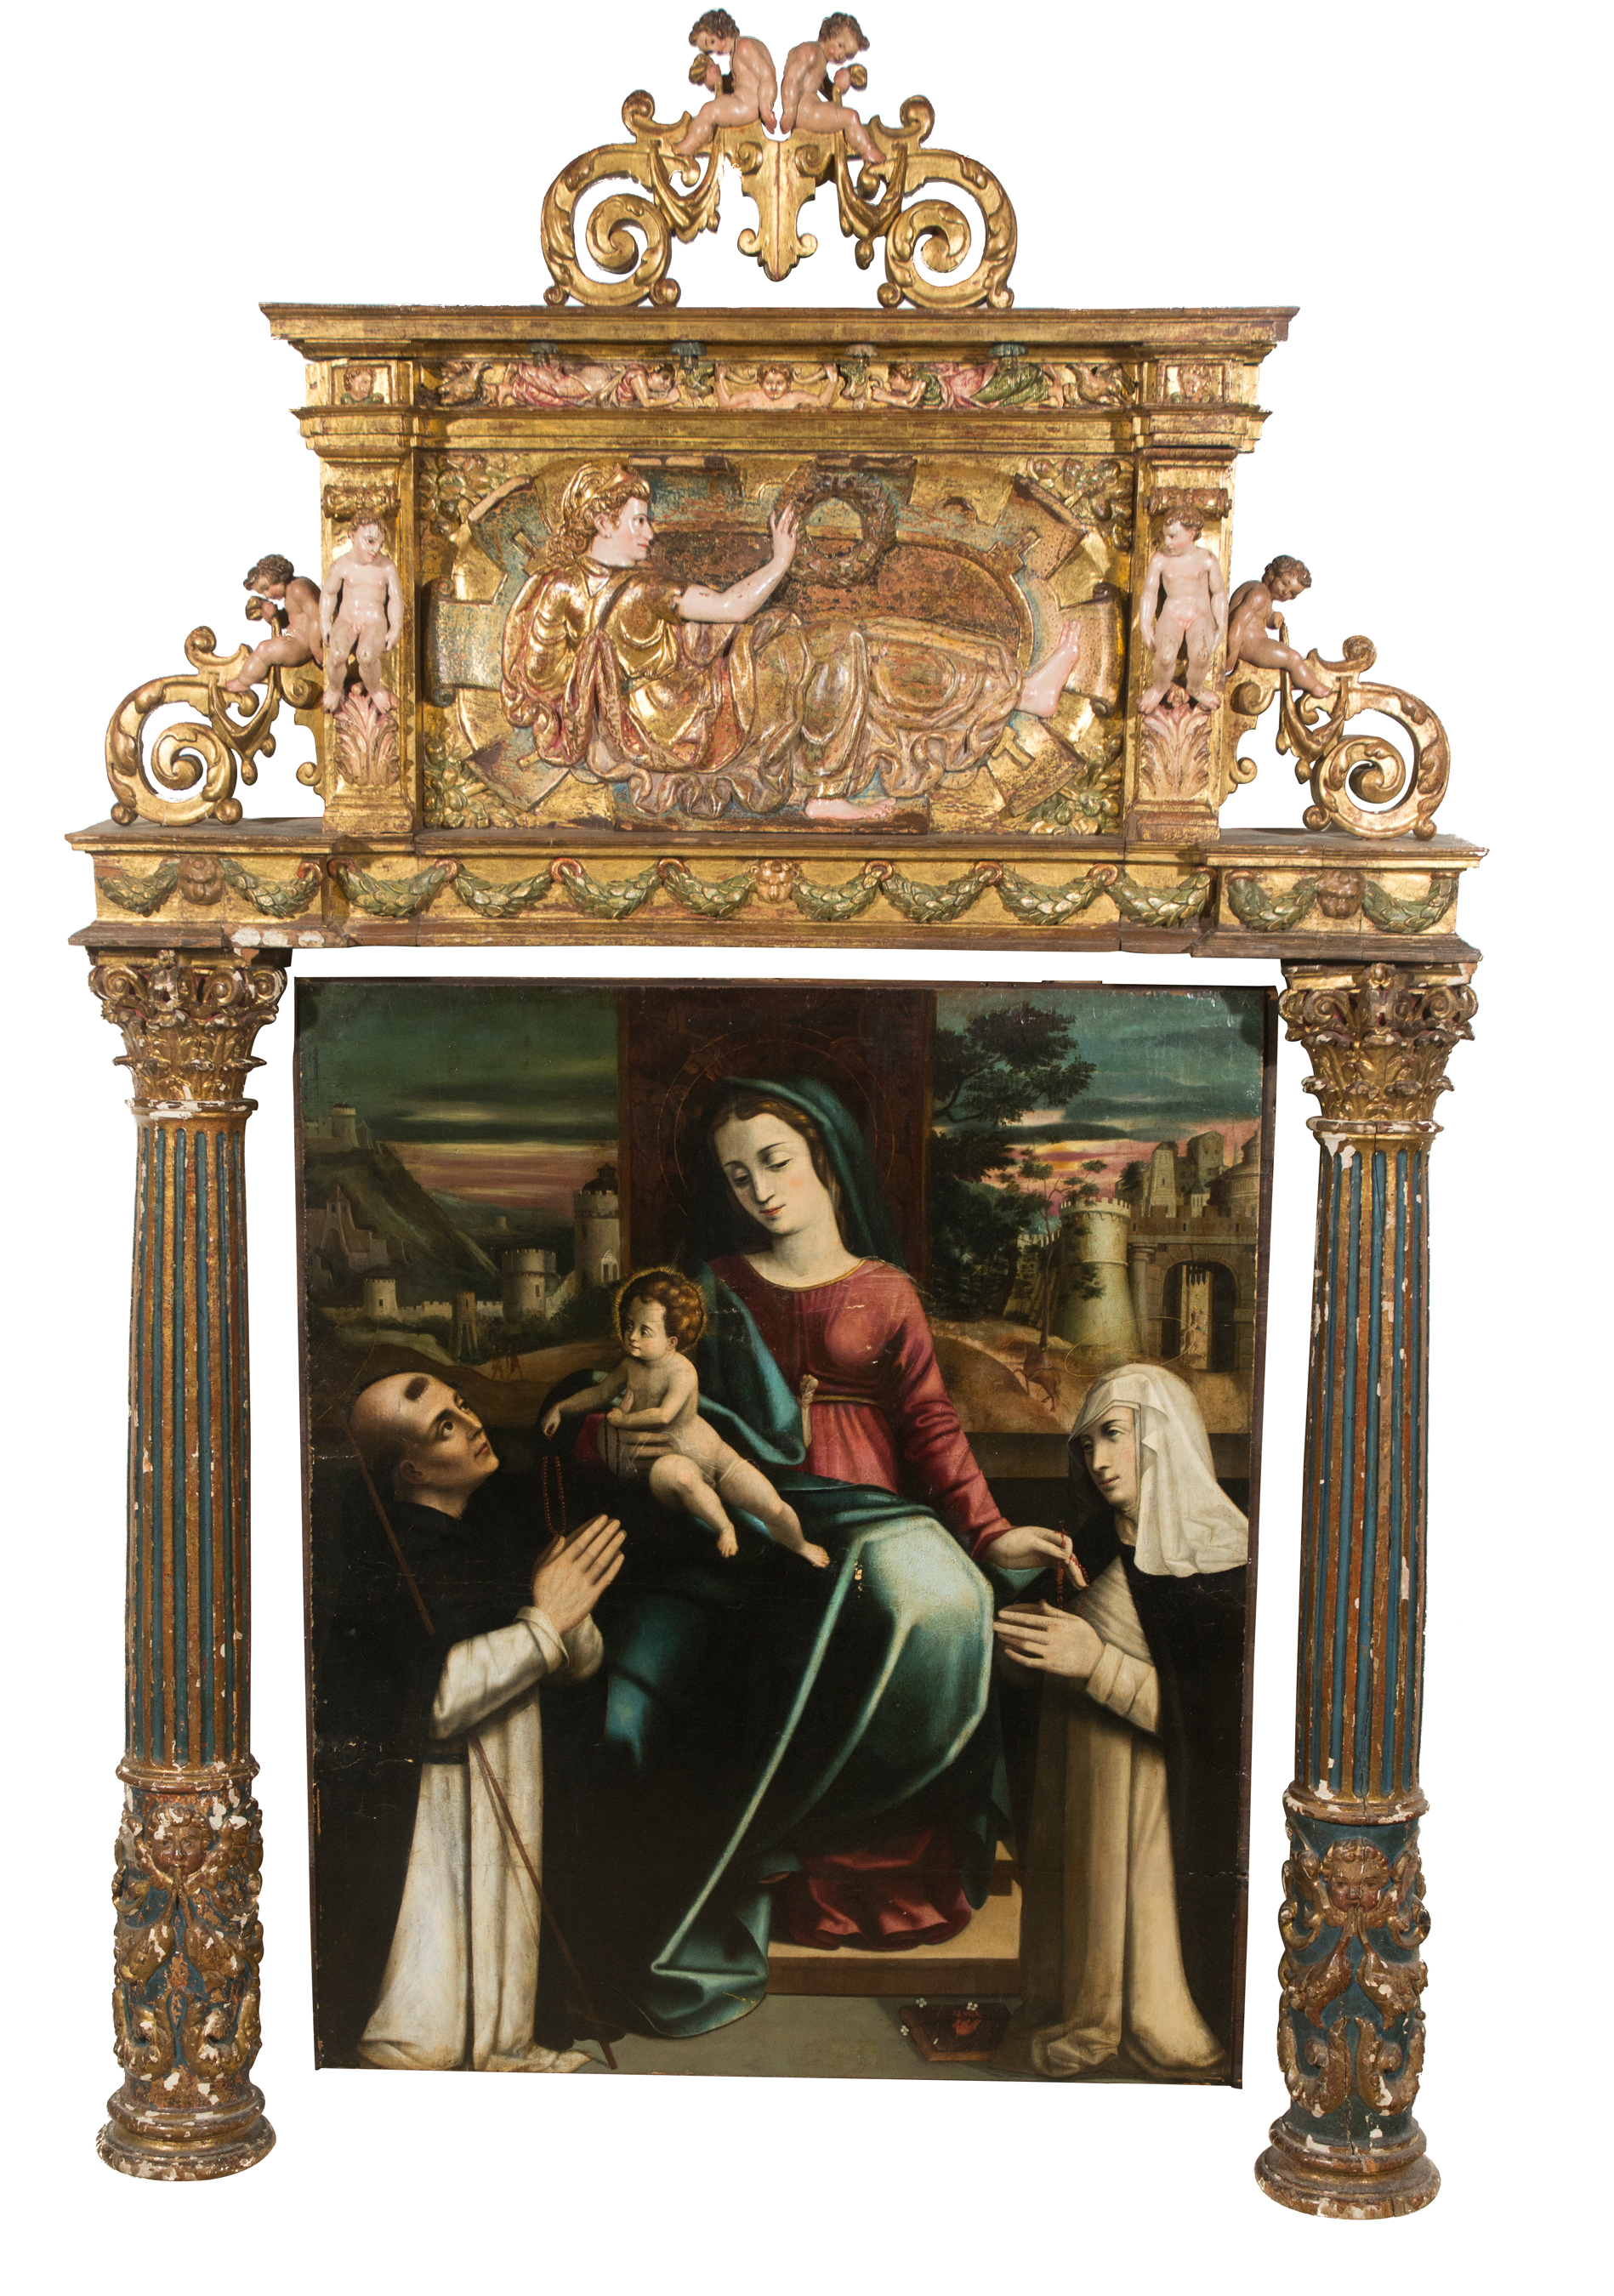 Escuela toledana. Siglo XVI. Atribuido a Blas de Prado (Camarena, Toledo, c. 1545 - Madrid, 1599) o Luis de Velasco (Toledo, c. 1530 - 1606)